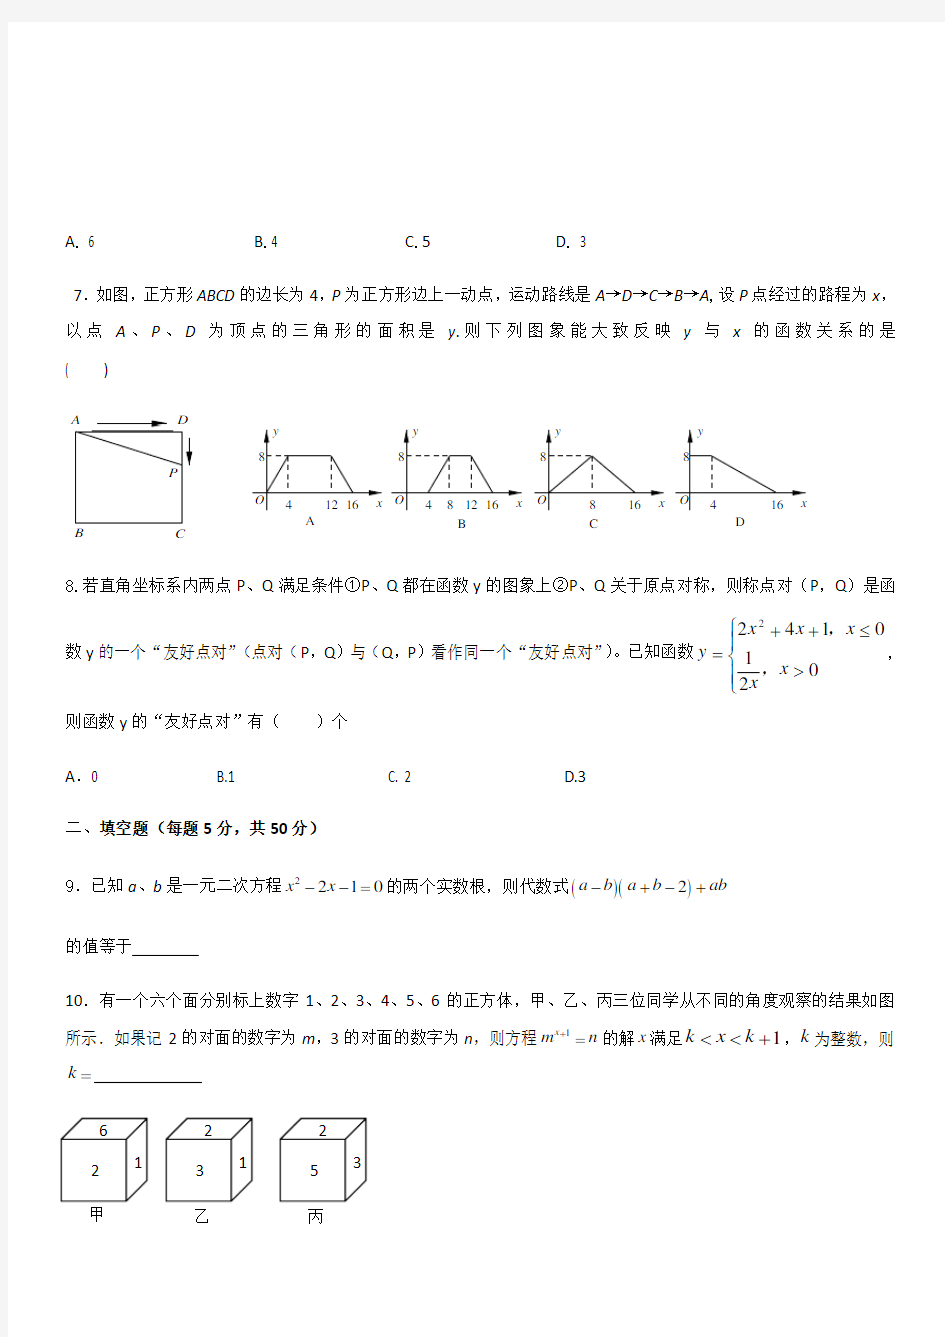 新高一分班考试数学真题(三)